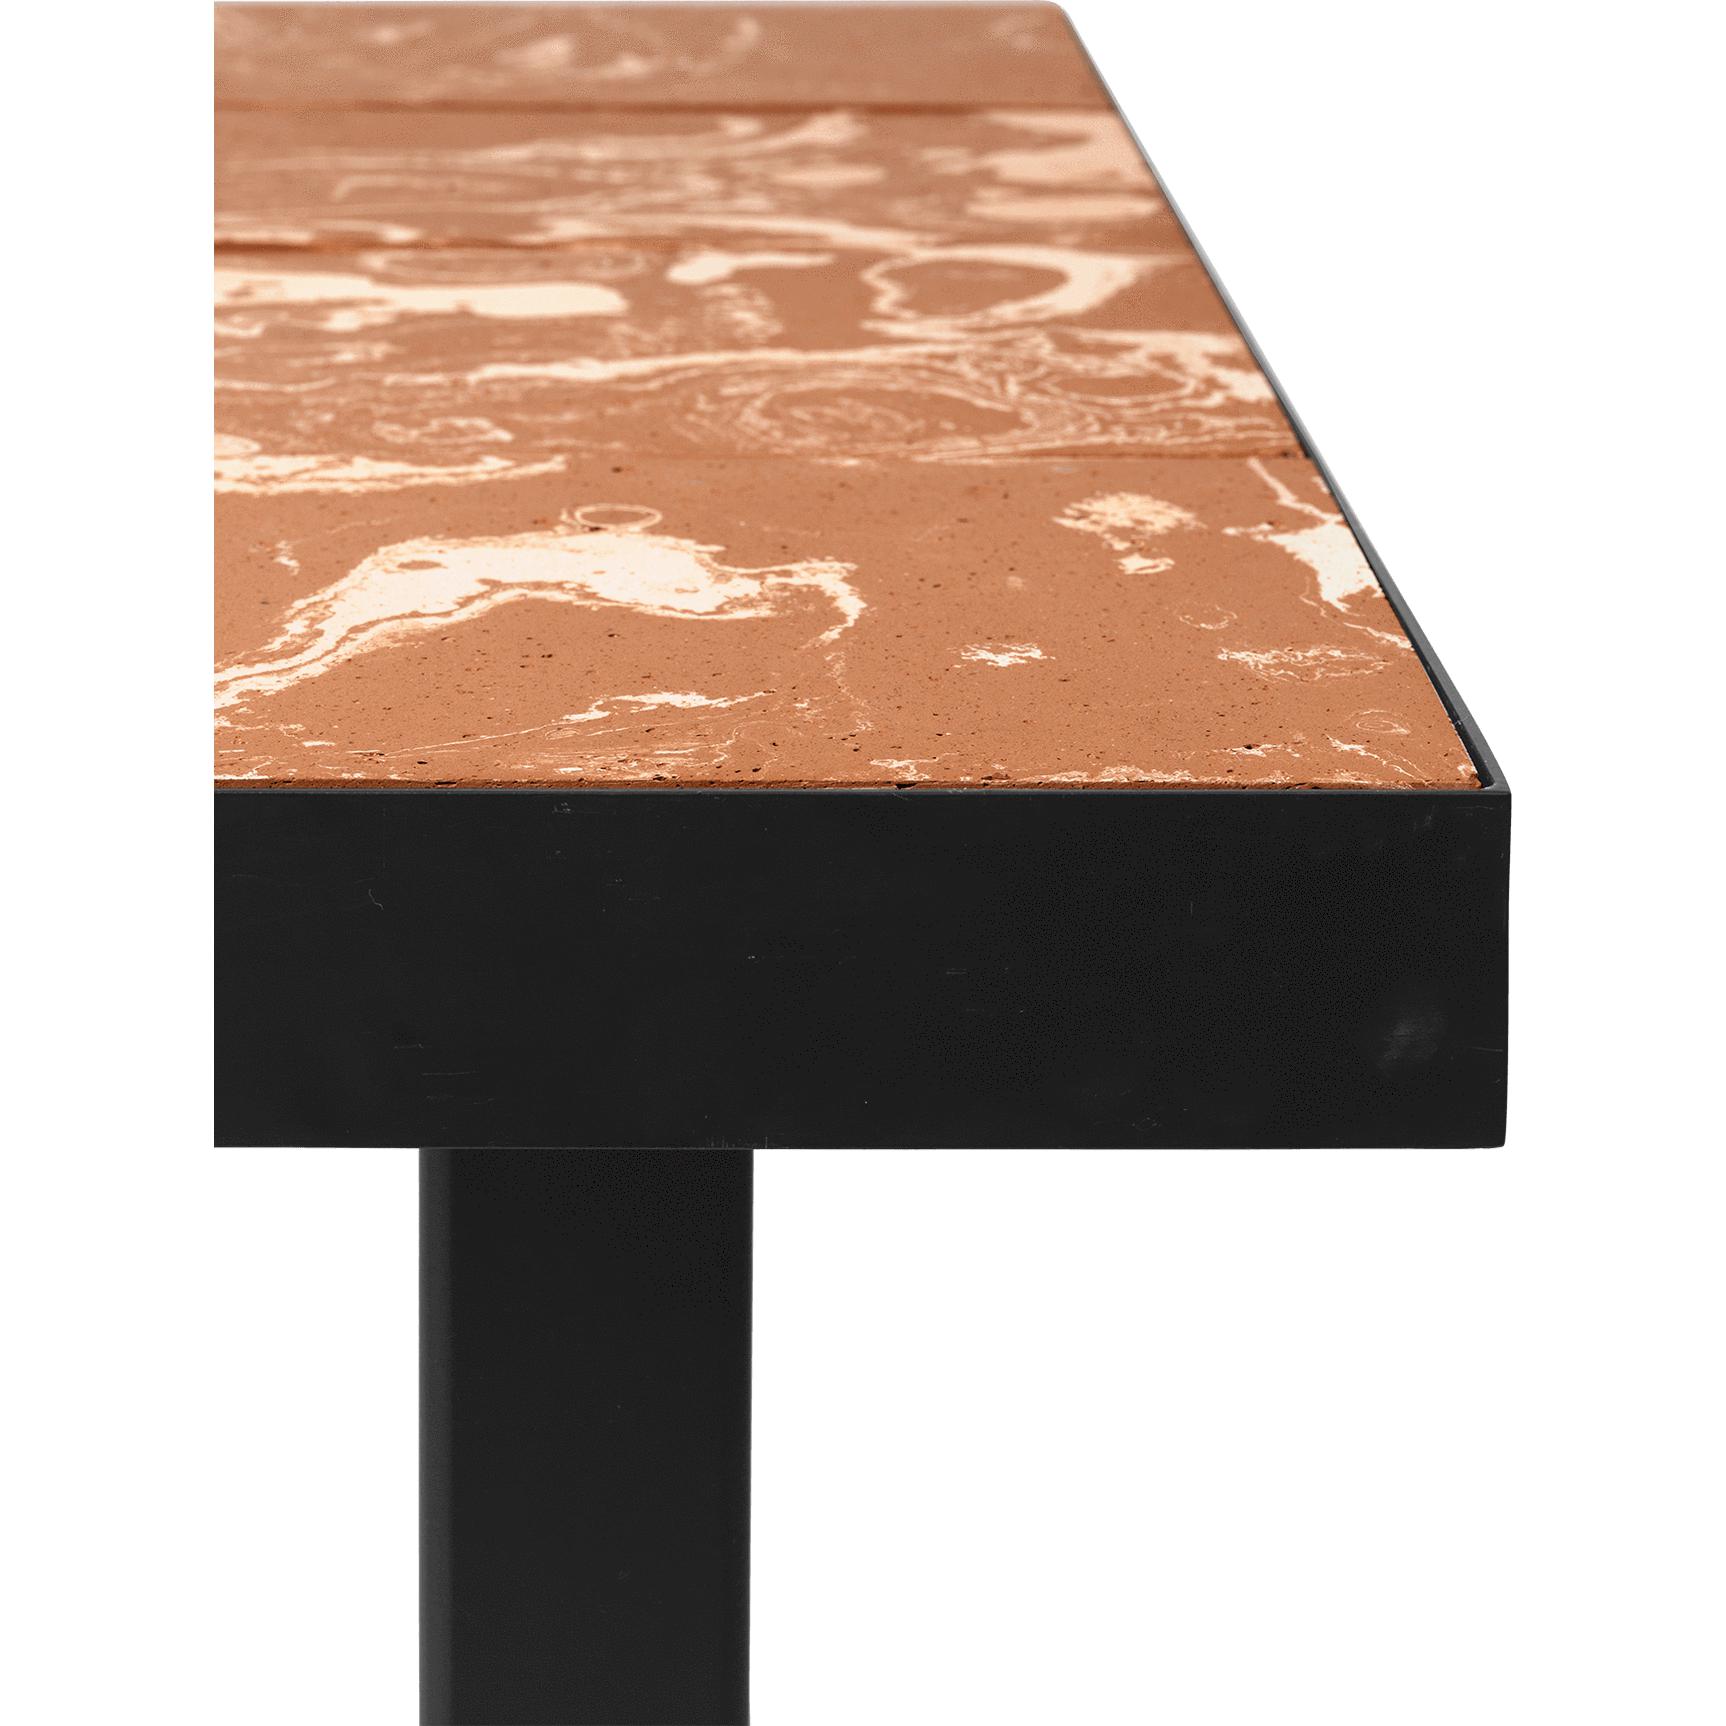 Ferm Living Flod Tiles Cafe Table, Terracotta/Black